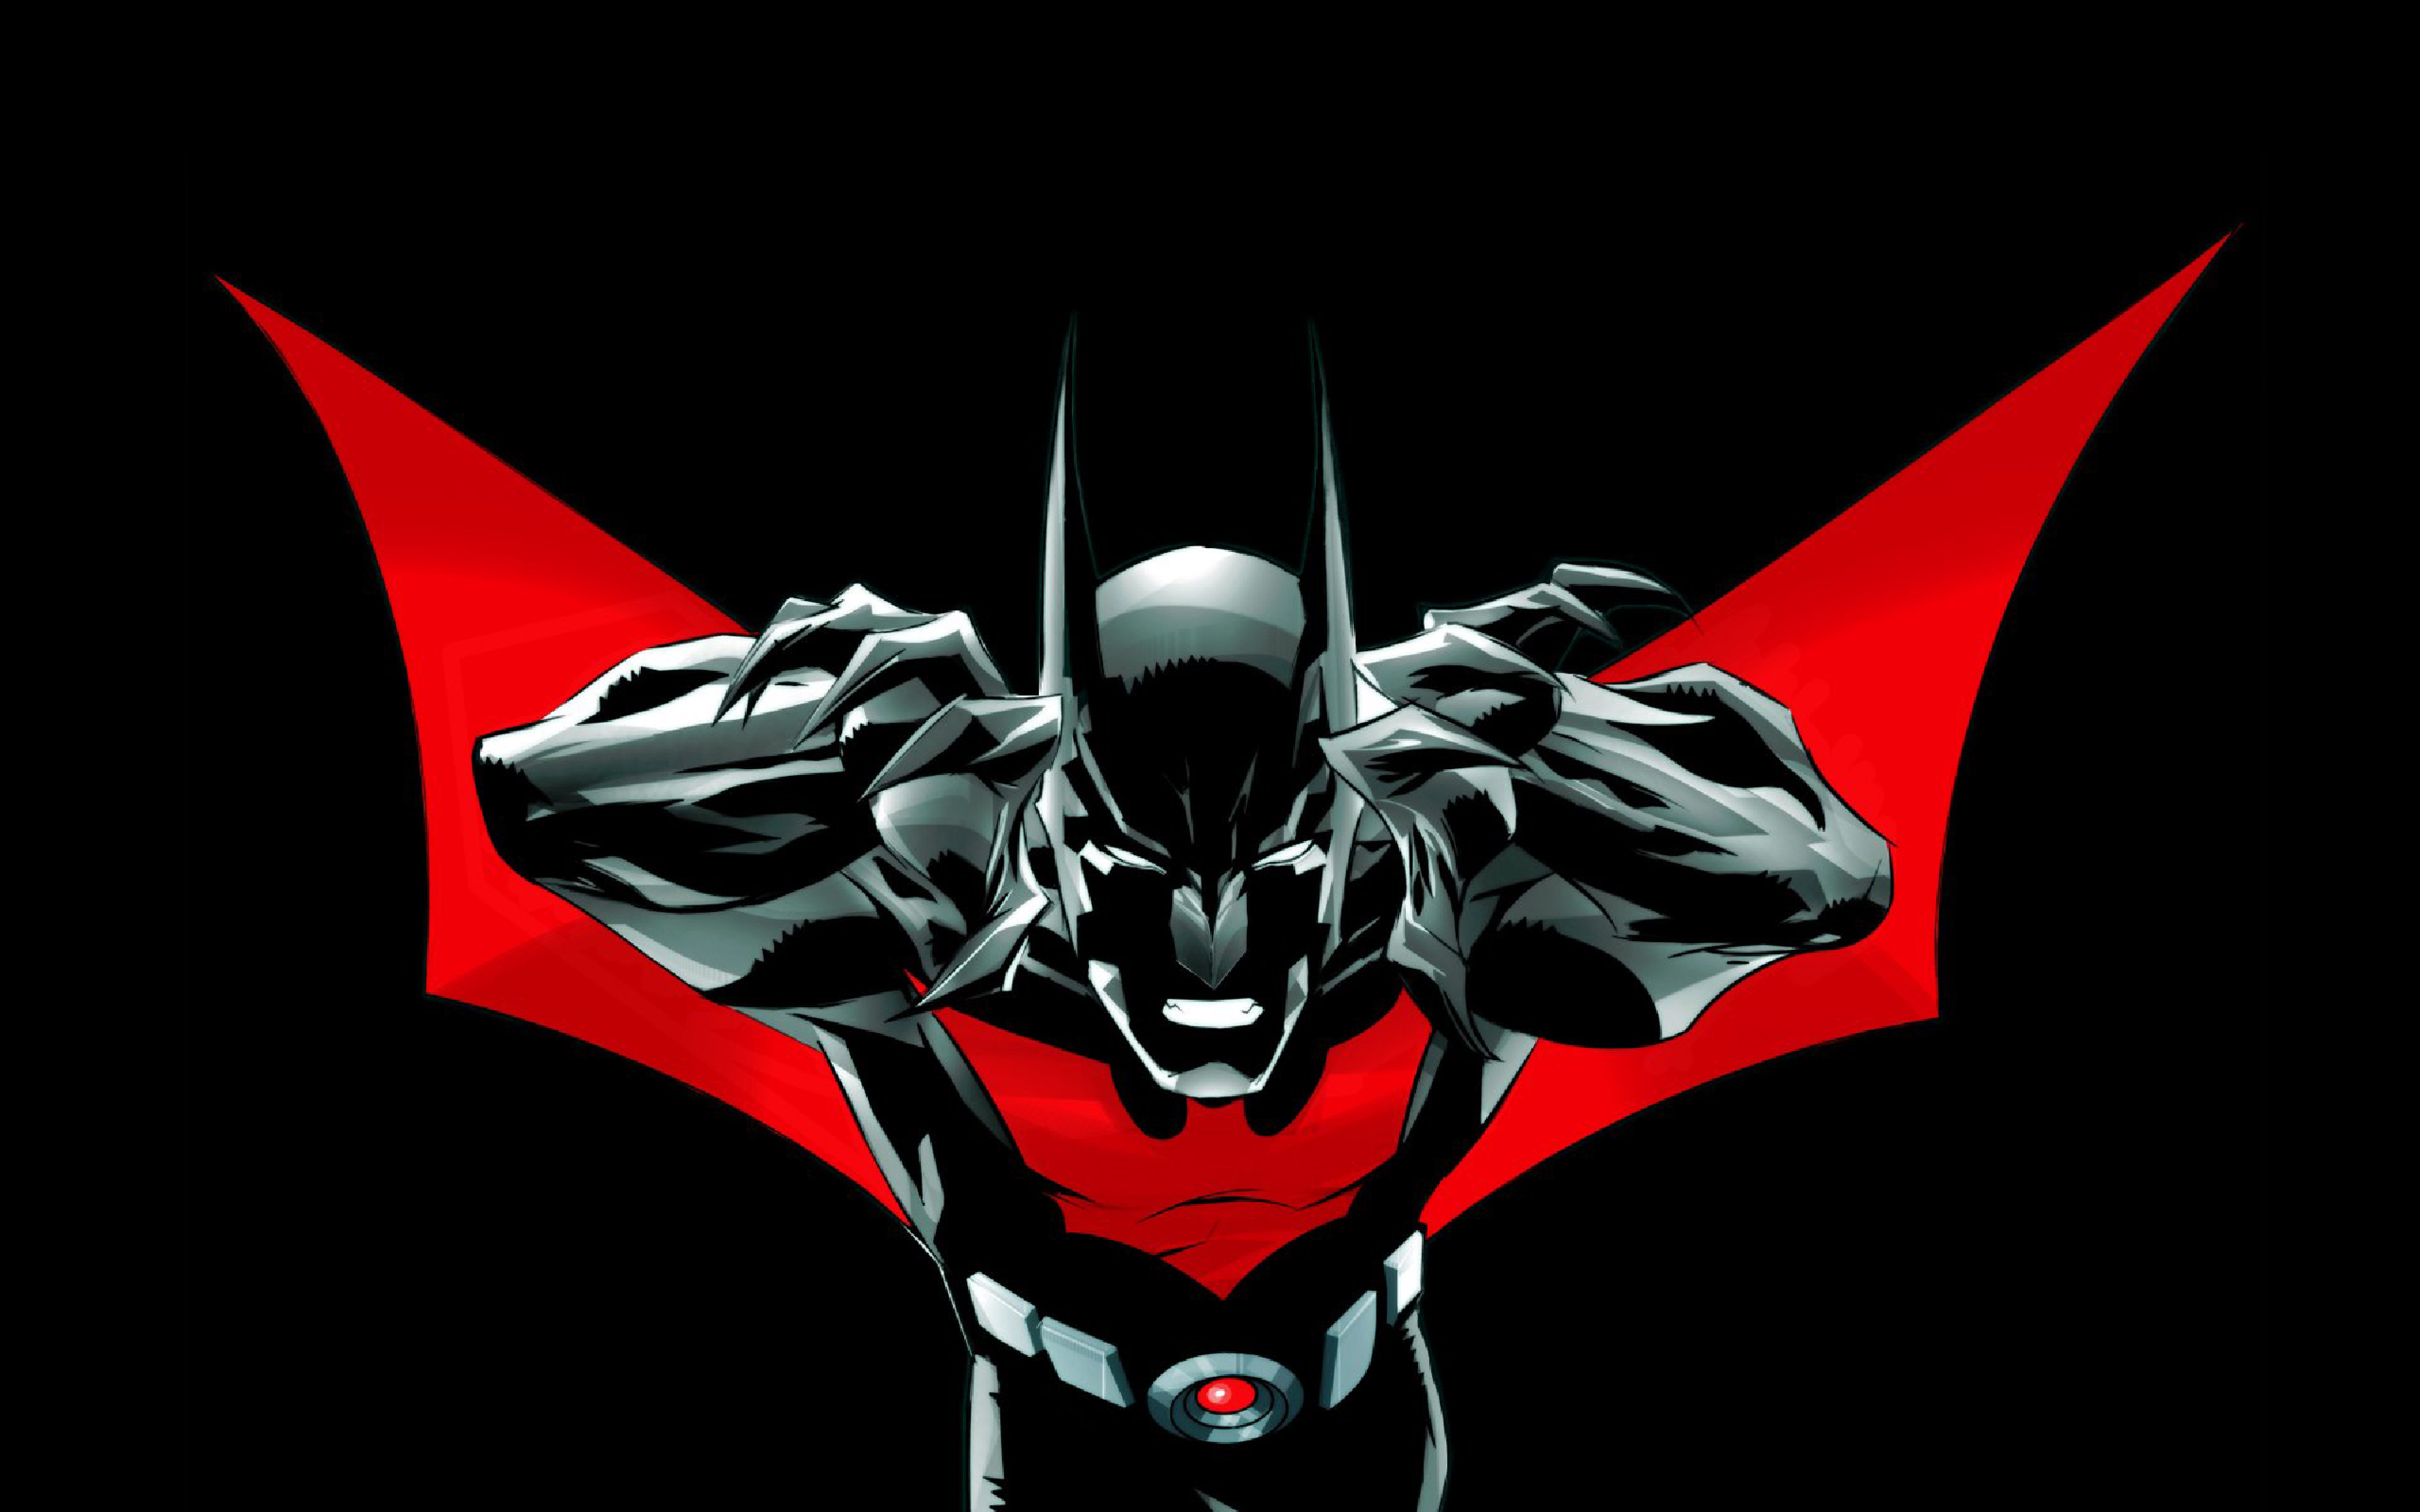 Black & Red Batman (DC Comics) 5K UHD Wallpaper